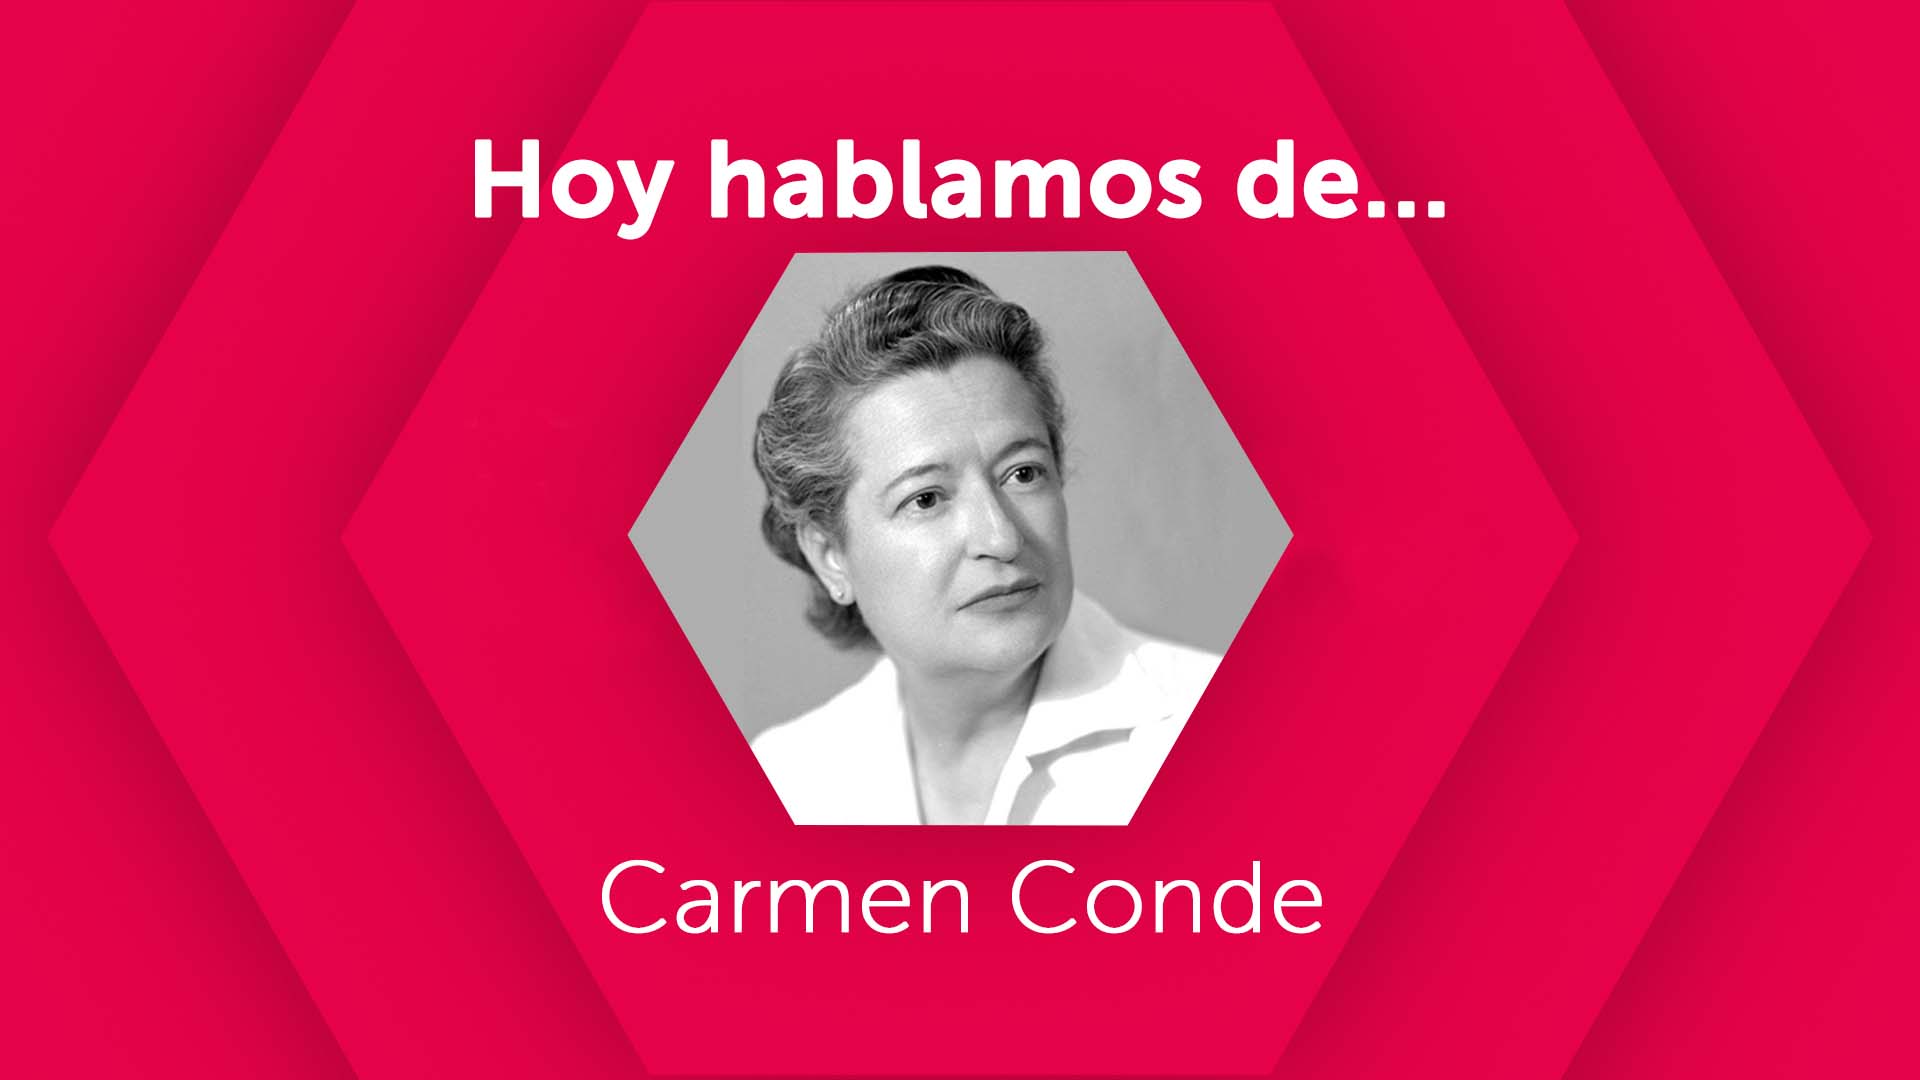 Hoy hablamos de Carmen Conde